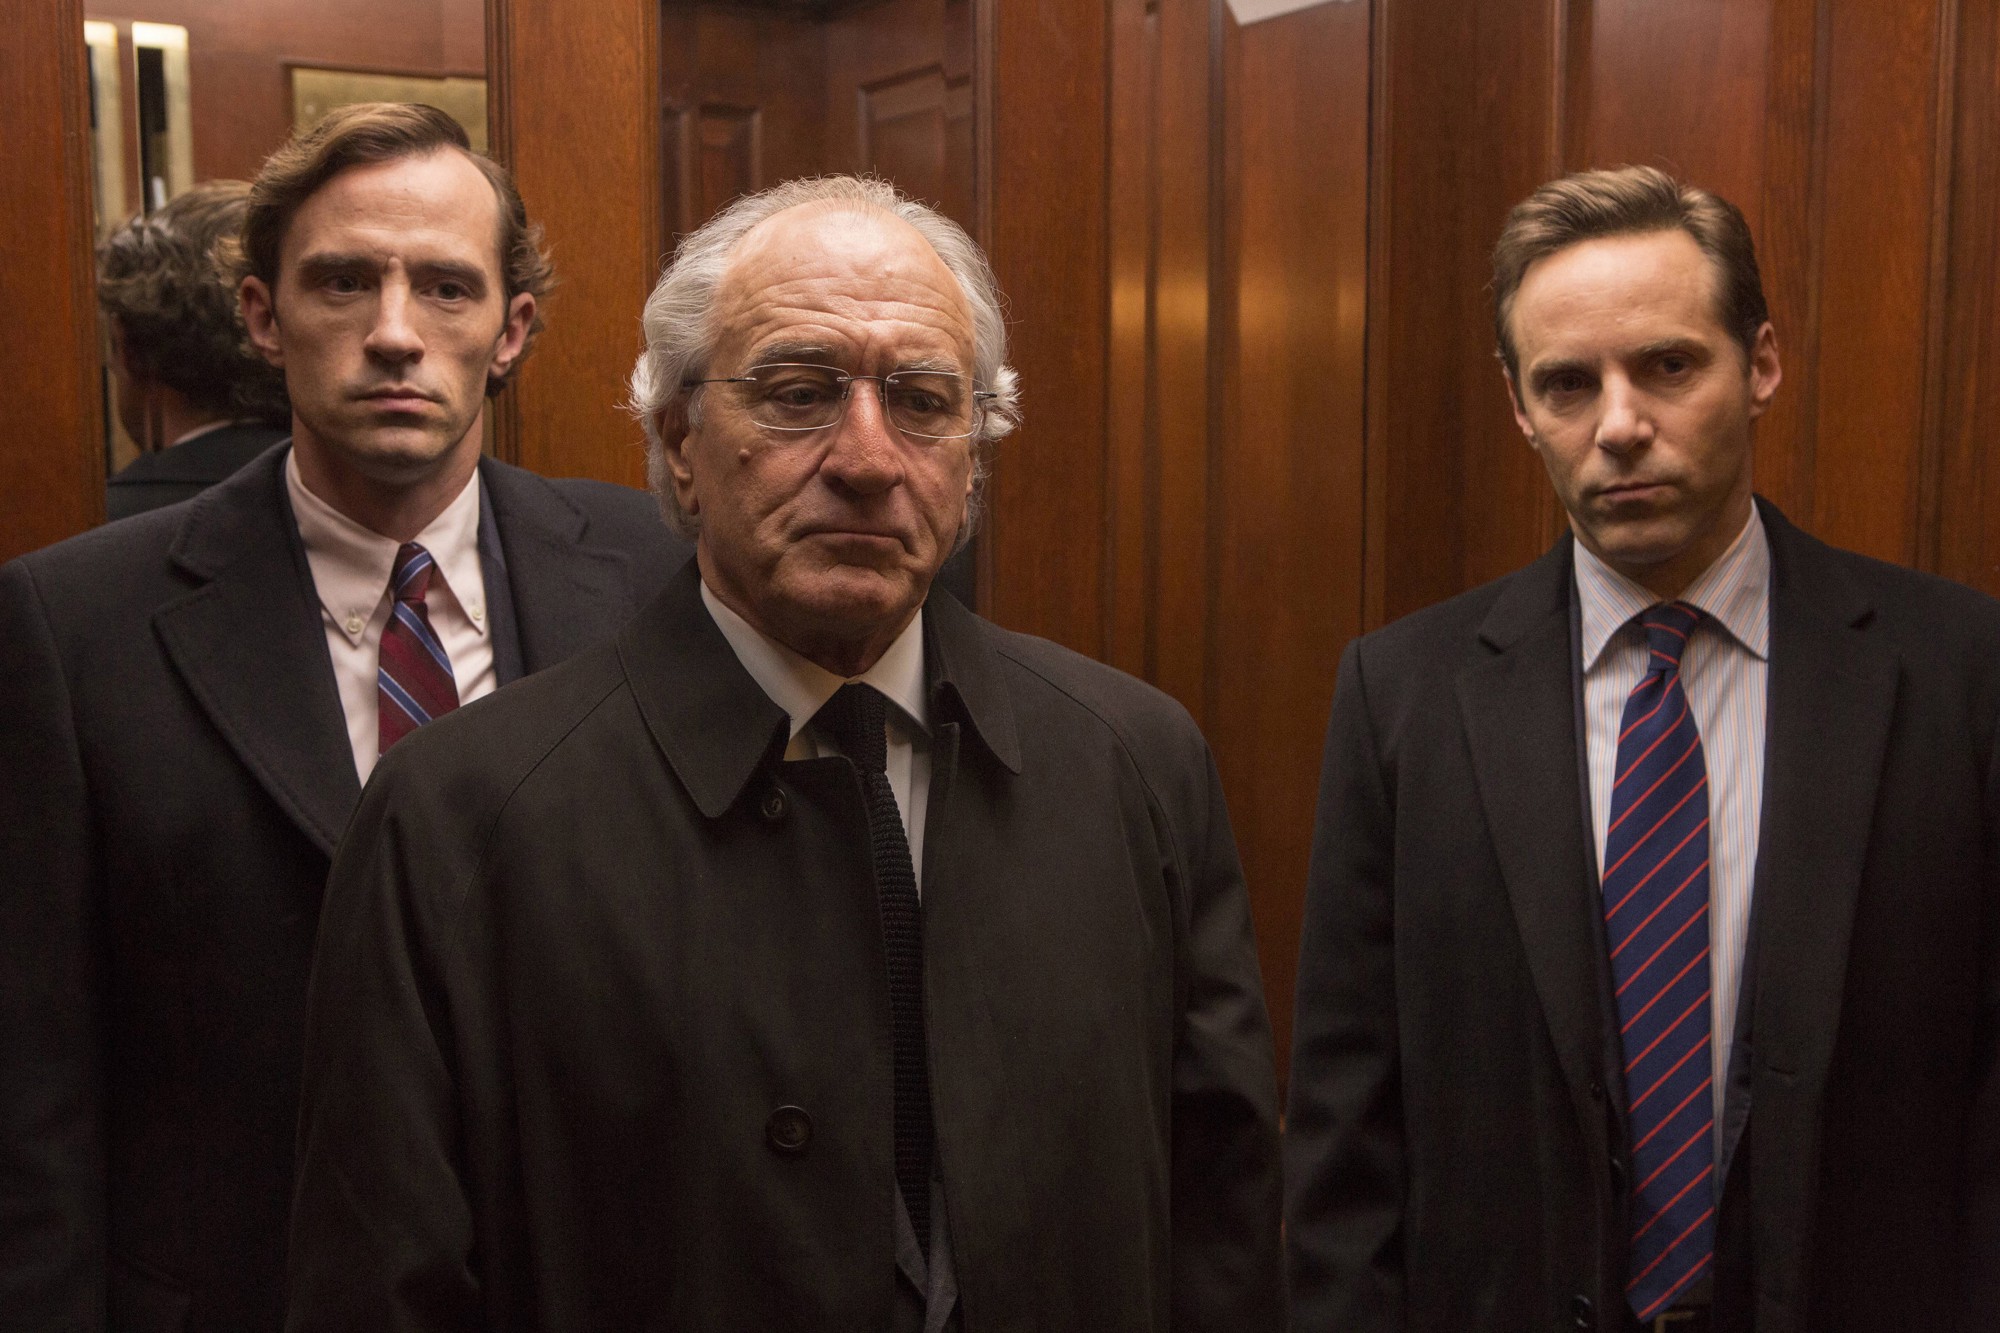 O Mago das Mentiras | Com De Niro, filme da HBO sobre fraude financeira é excelente!